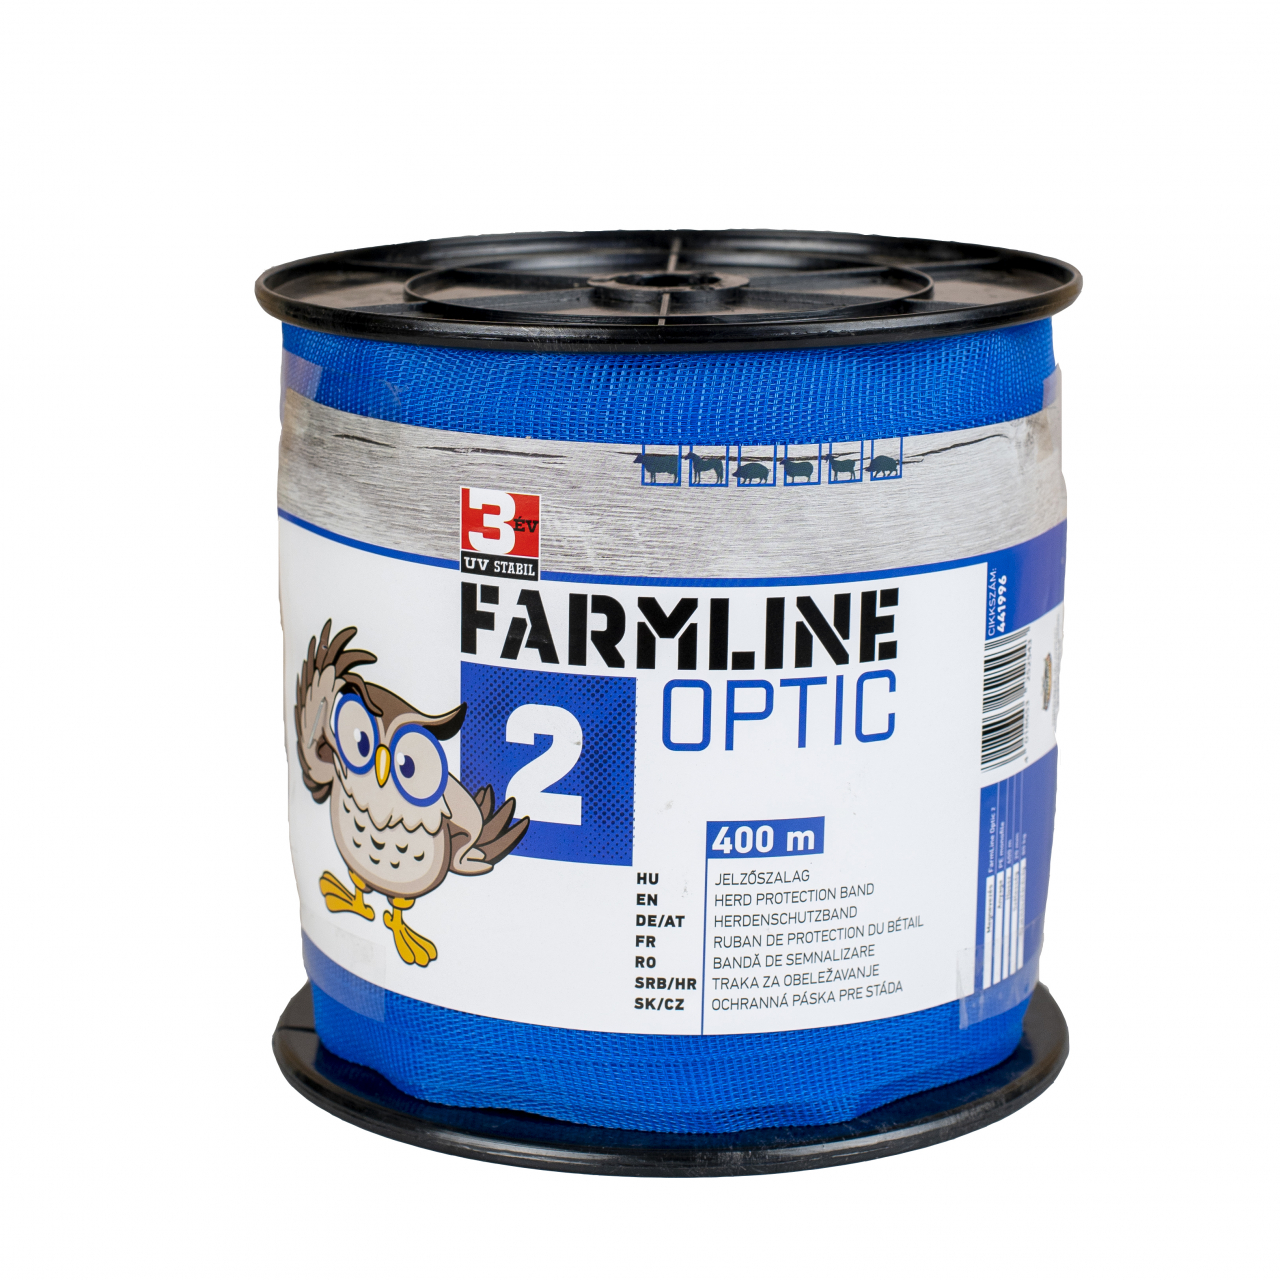 FarmLine Optic 2